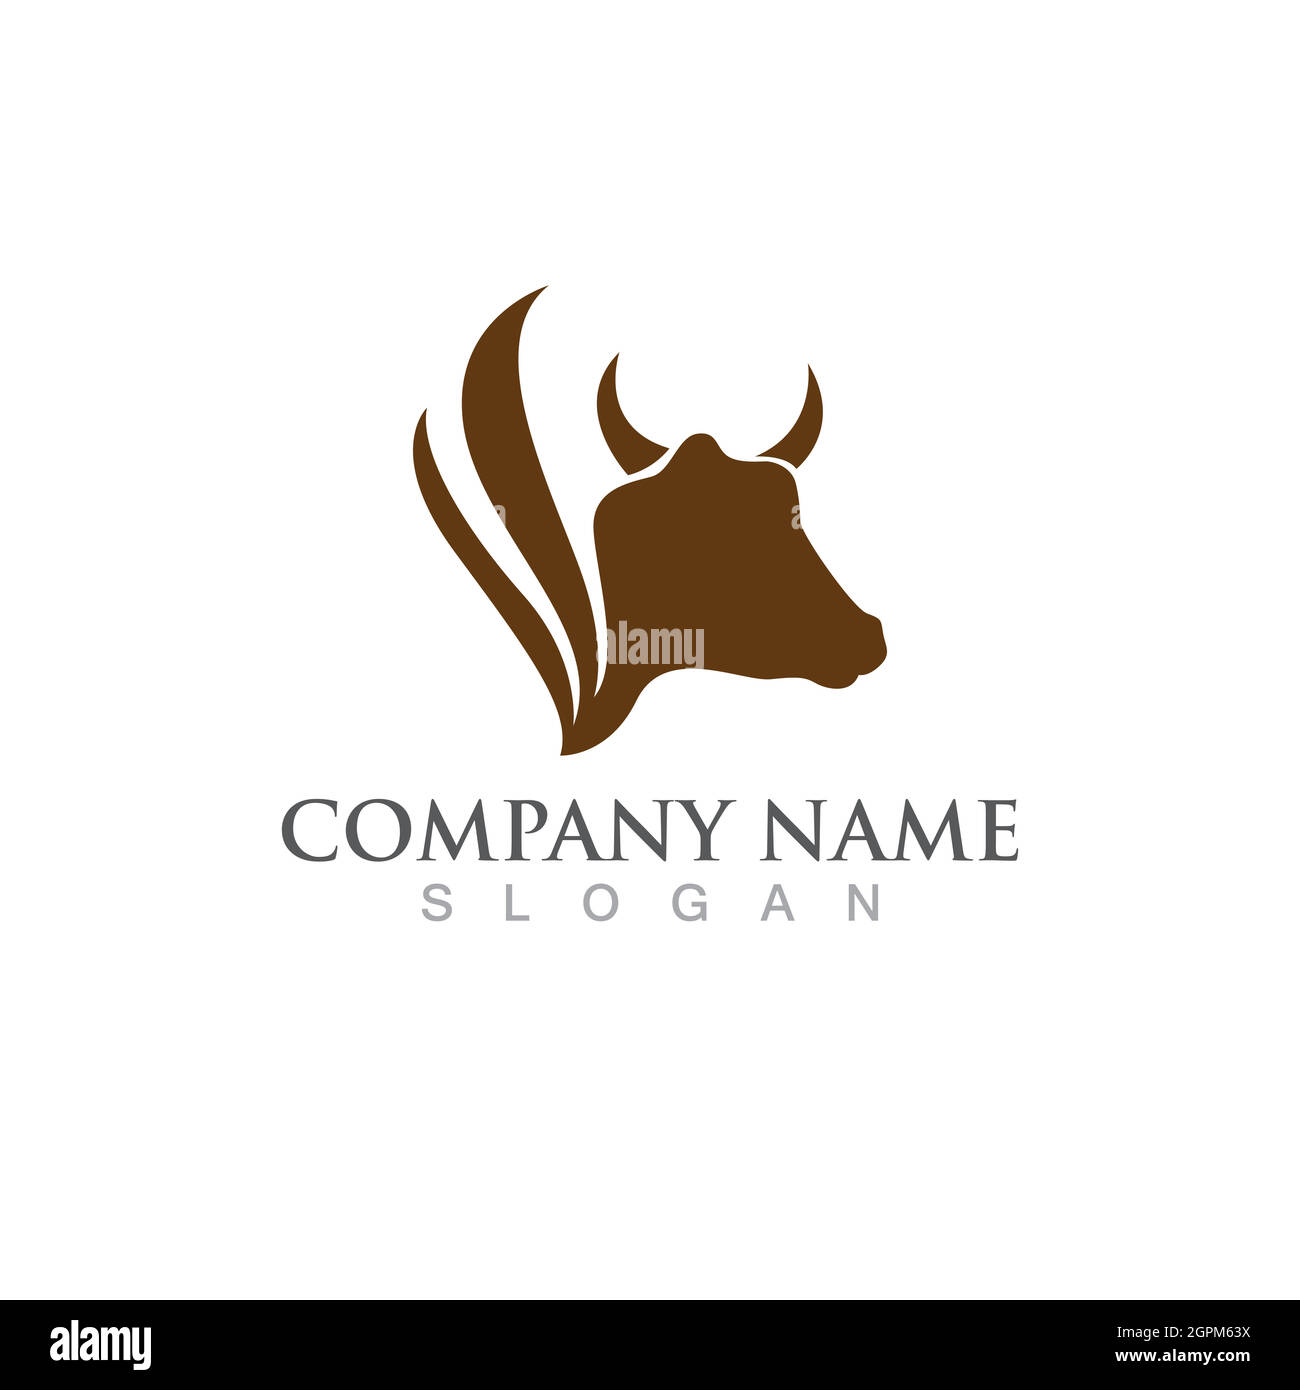 Cow Logo Template vector icon Stock Vector